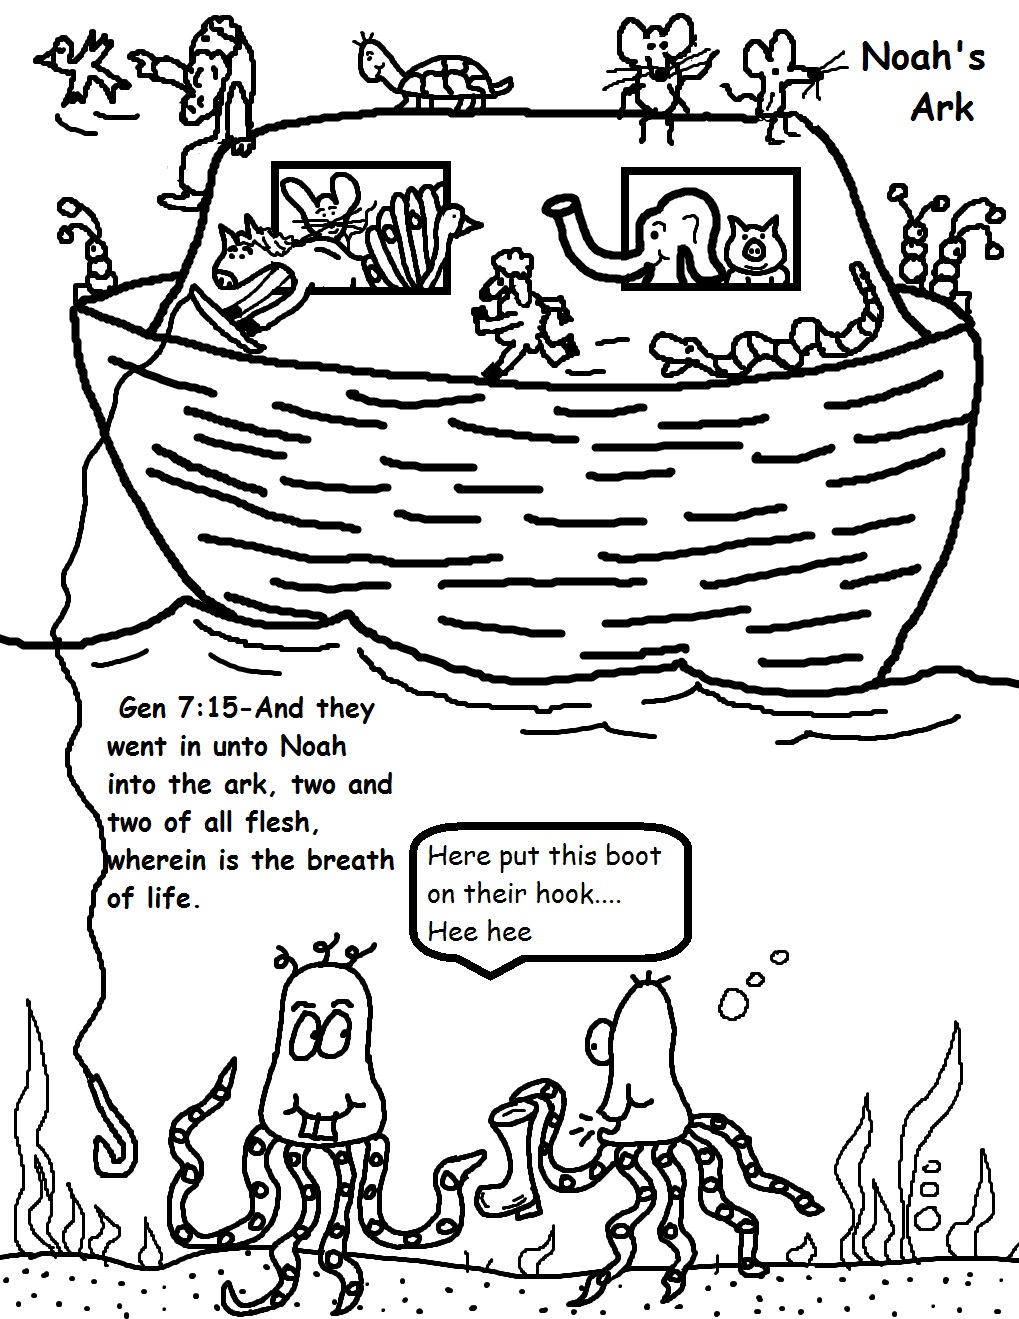 Gambar Noah Ark Coloring Pages Rainbow Bible Verses di Rebanas - Rebanas